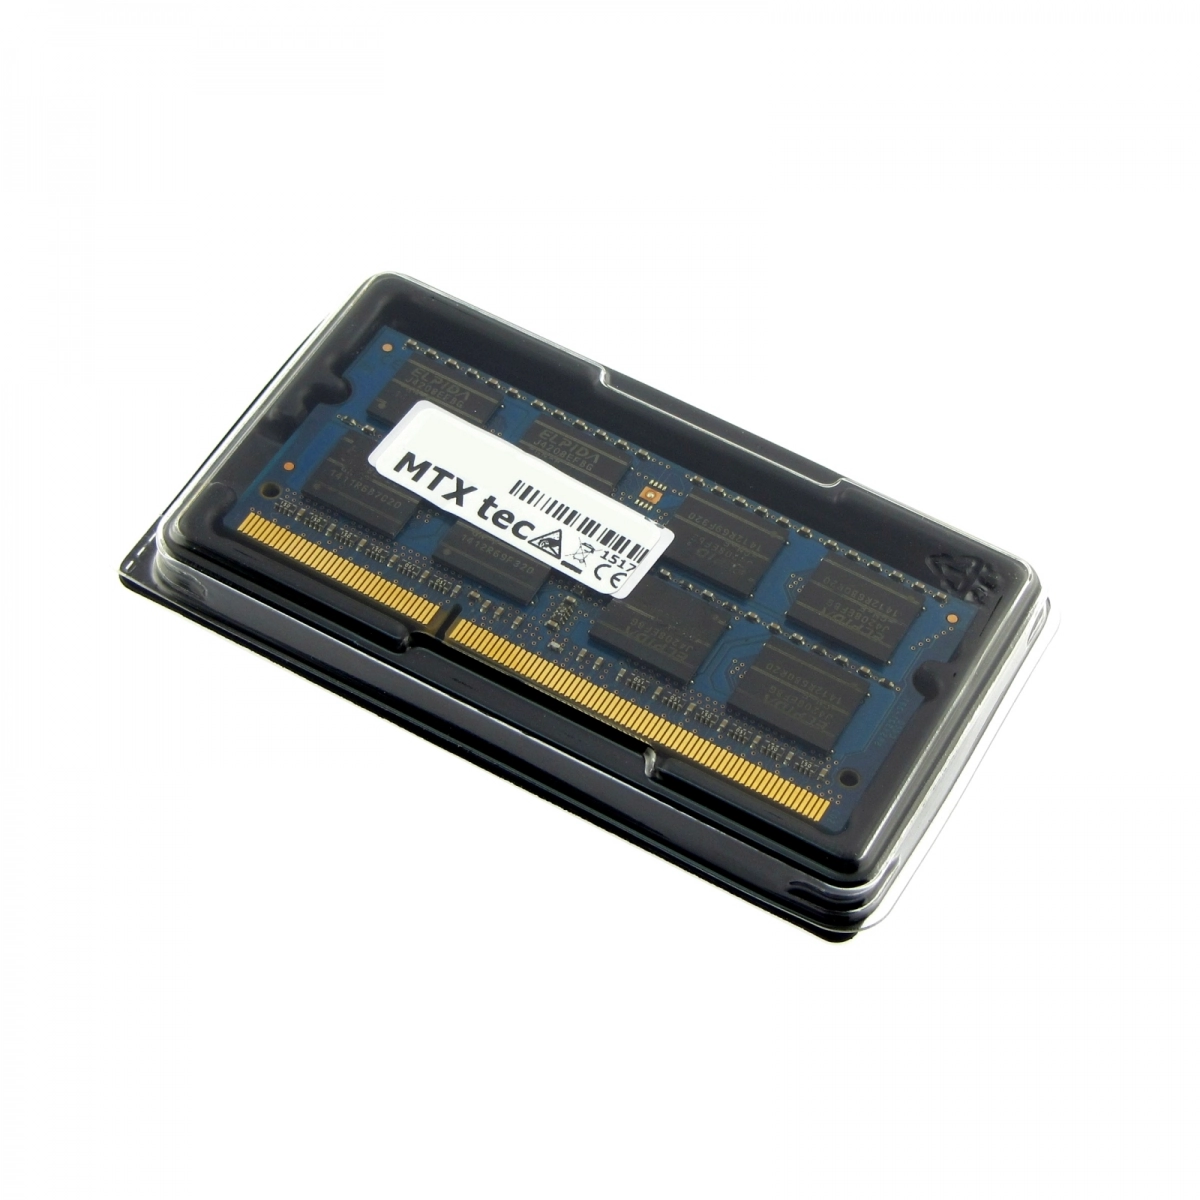 MTXtec Arbeitsspeicher 4 GB RAM für TOSHIBA Satellite L670D-15Q